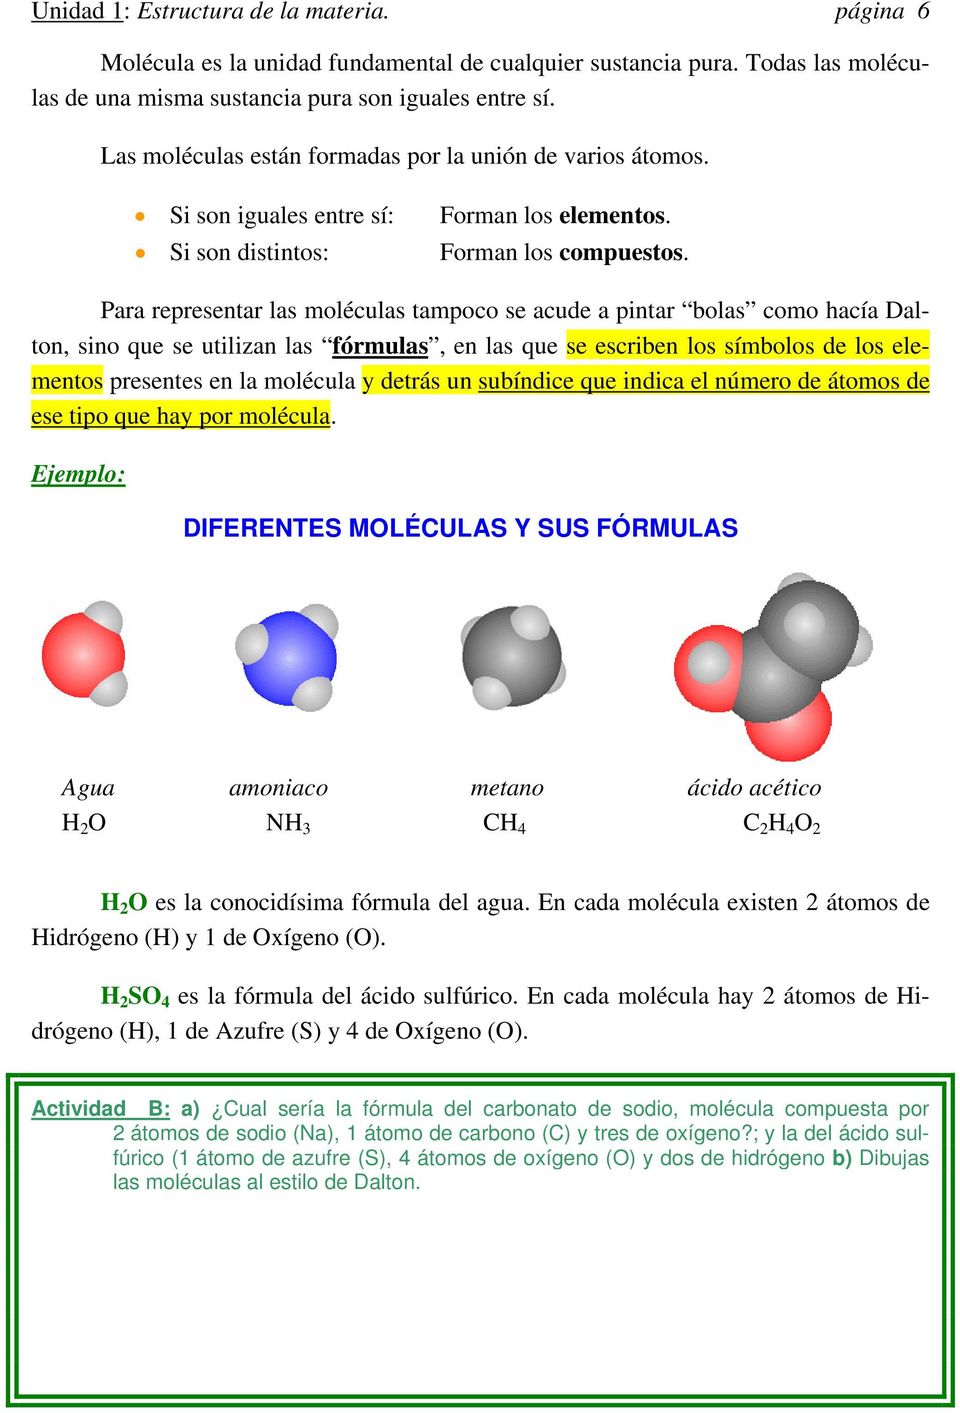 Para representar las moléculas tampoco se acude a pintar bolas como hacía Dalton, sino que se utilizan las fórmulas, en las que se escriben los símbolos de los elementos presentes en la molécula y